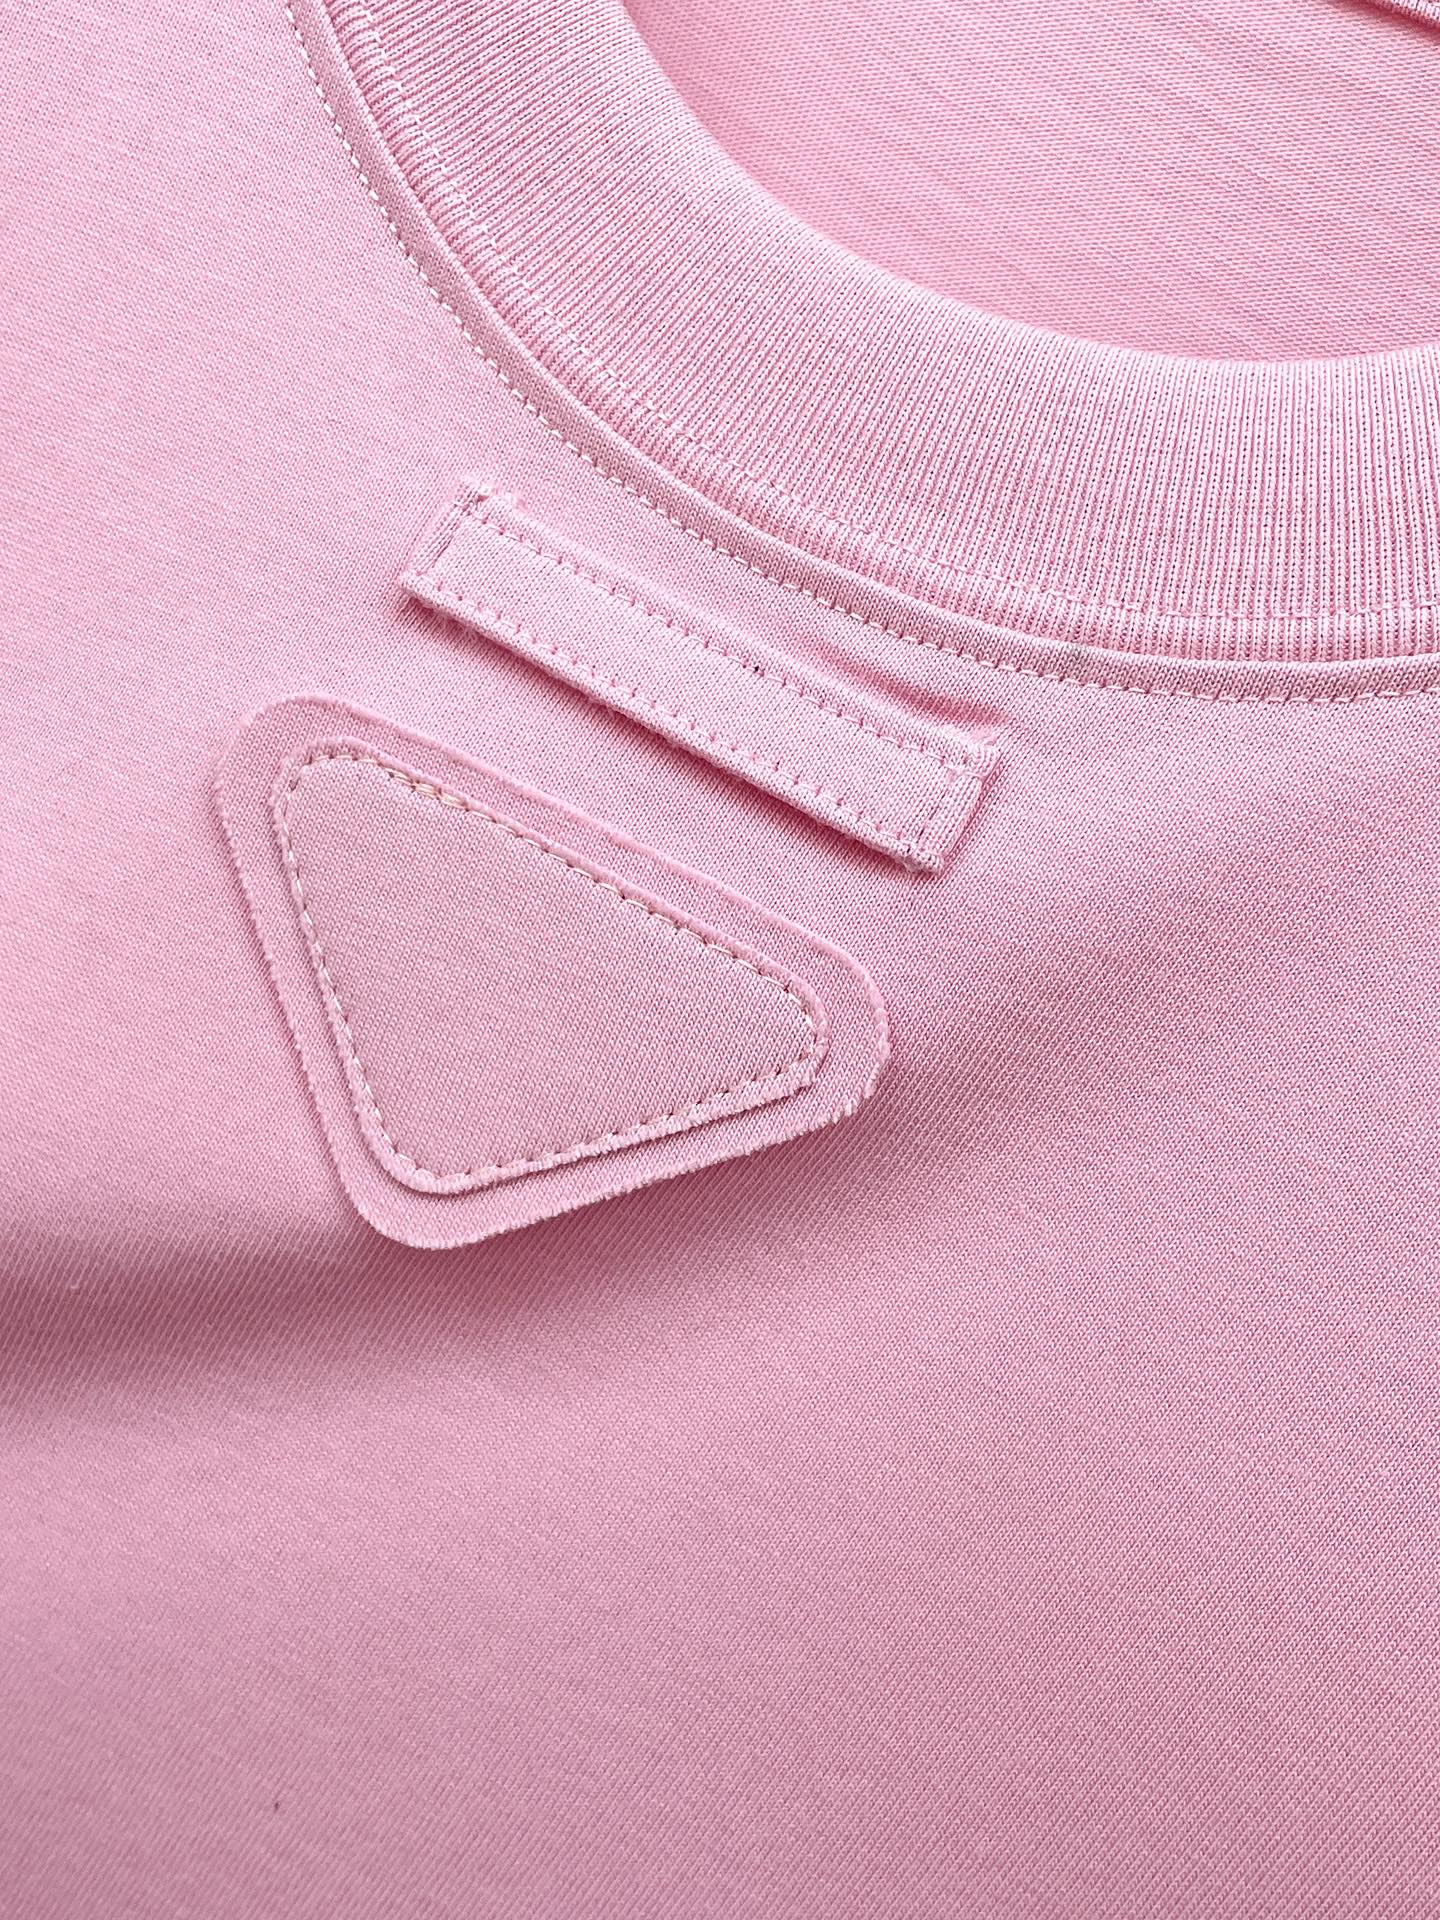 prada の t シャツ激安通販 短袖 ゆったり 純綿 トップス プリント 柔らかい シンプル ピンク_4